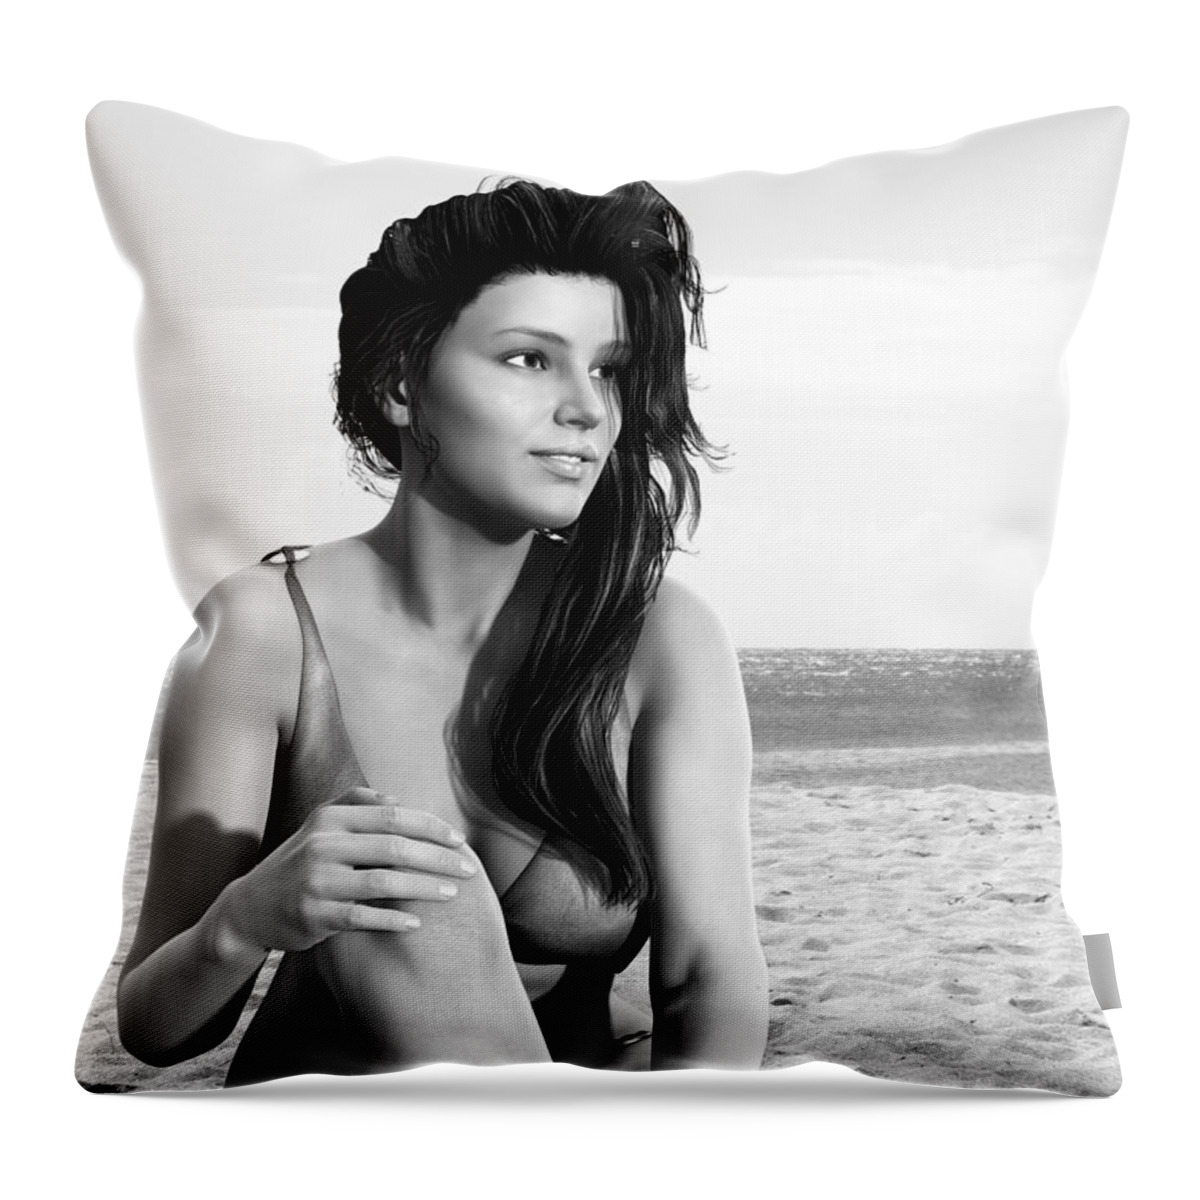 Monochrome Throw Pillow featuring the digital art Summer Breeze by Jayne Wilson